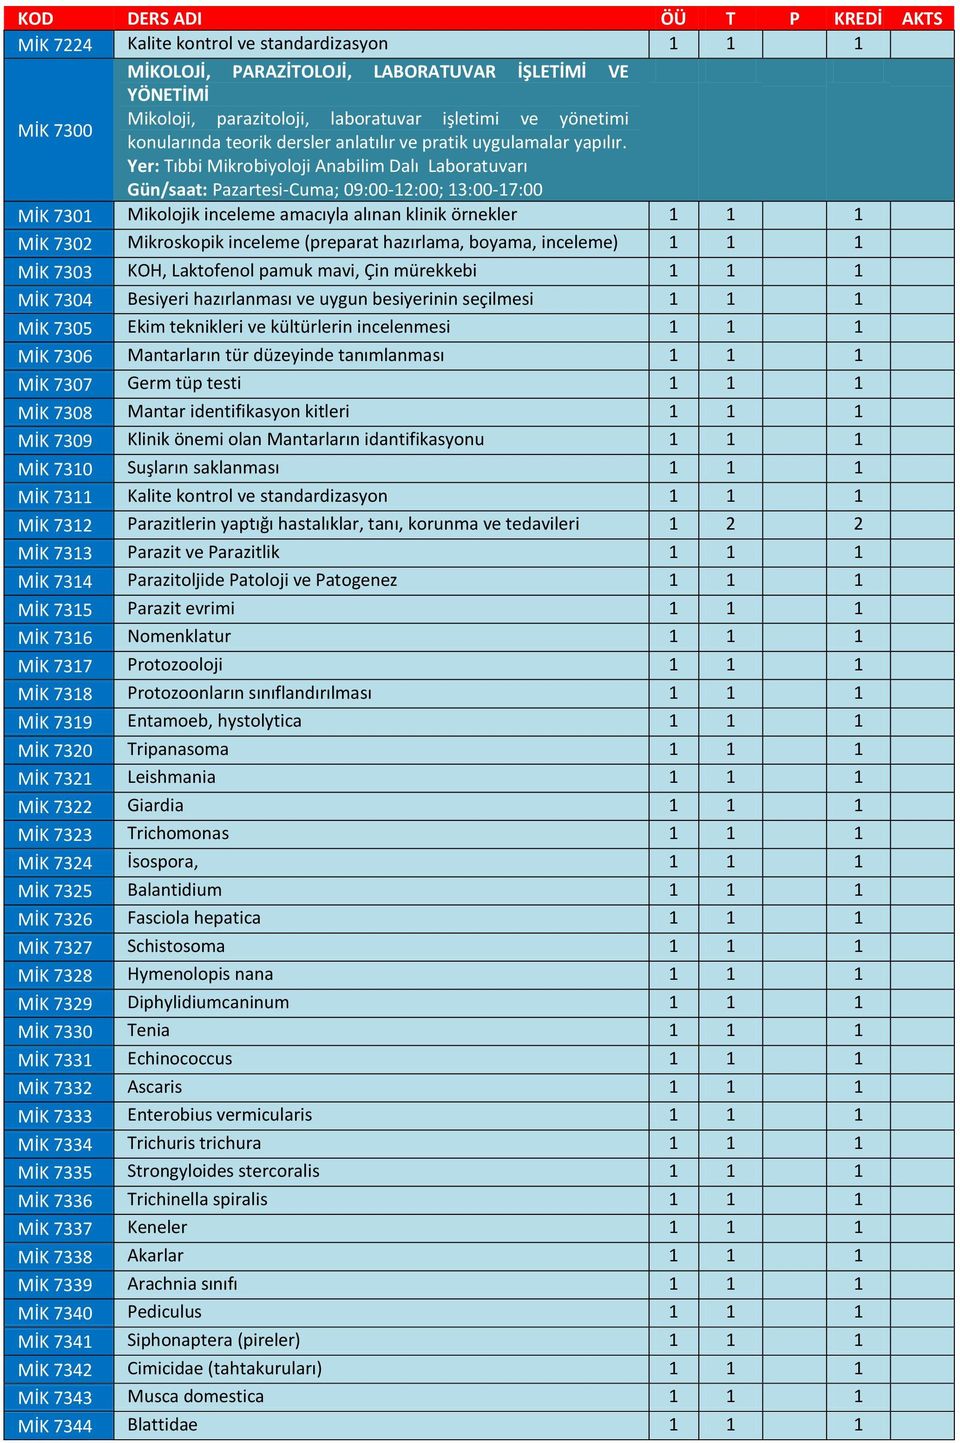 MİK 7301 Mikolojik inceleme amacıyla alınan klinik örnekler 1 1 1 MİK 7302 Mikroskopik inceleme (preparat hazırlama, boyama, inceleme) 1 1 1 MİK 7303 KOH, Laktofenol pamuk mavi, Çin mürekkebi 1 1 1